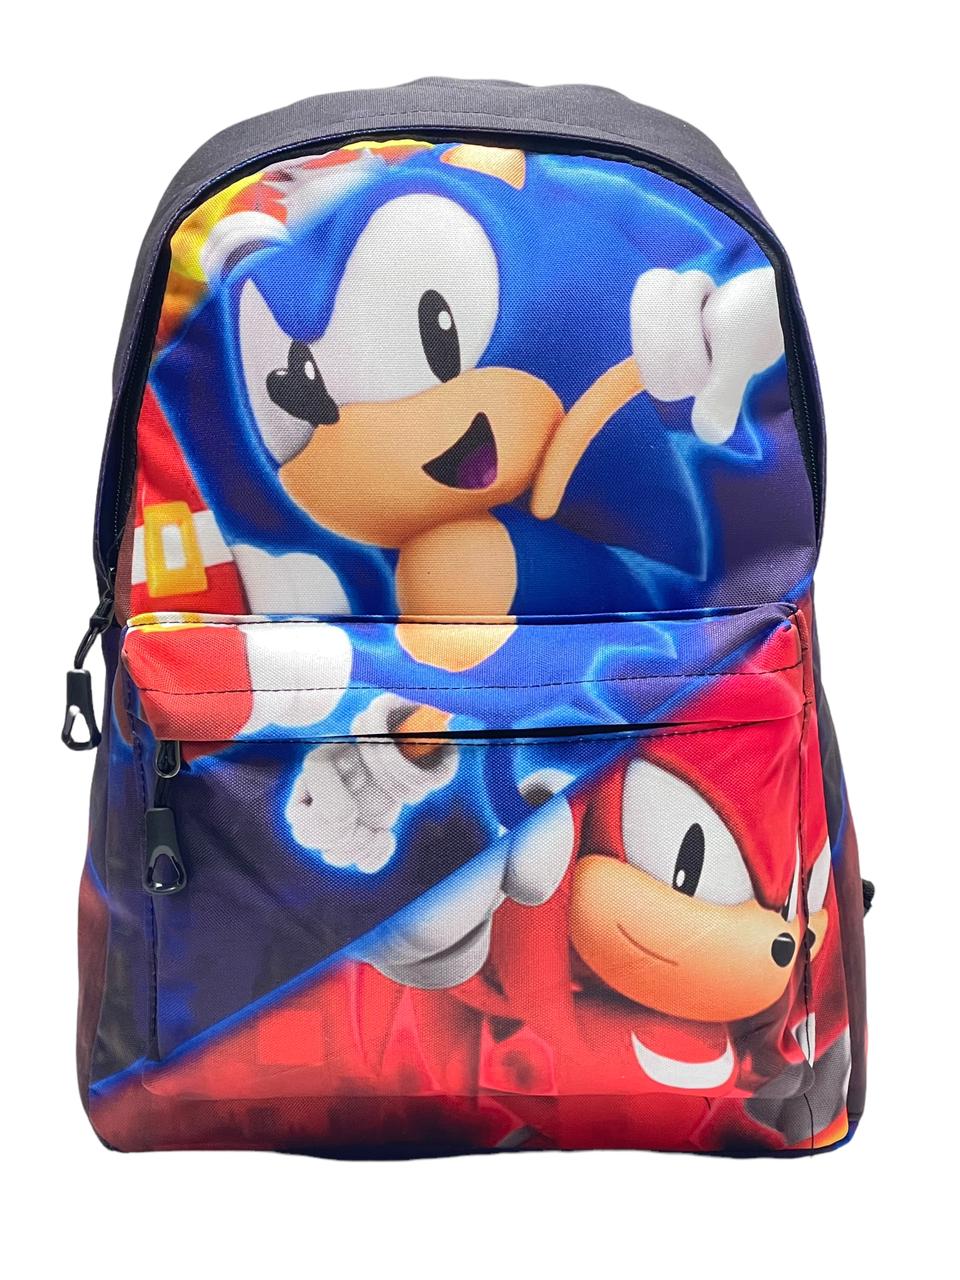 Рюкзак для детей и подростков BAGS-ART большого размера Sonic, красно-синий